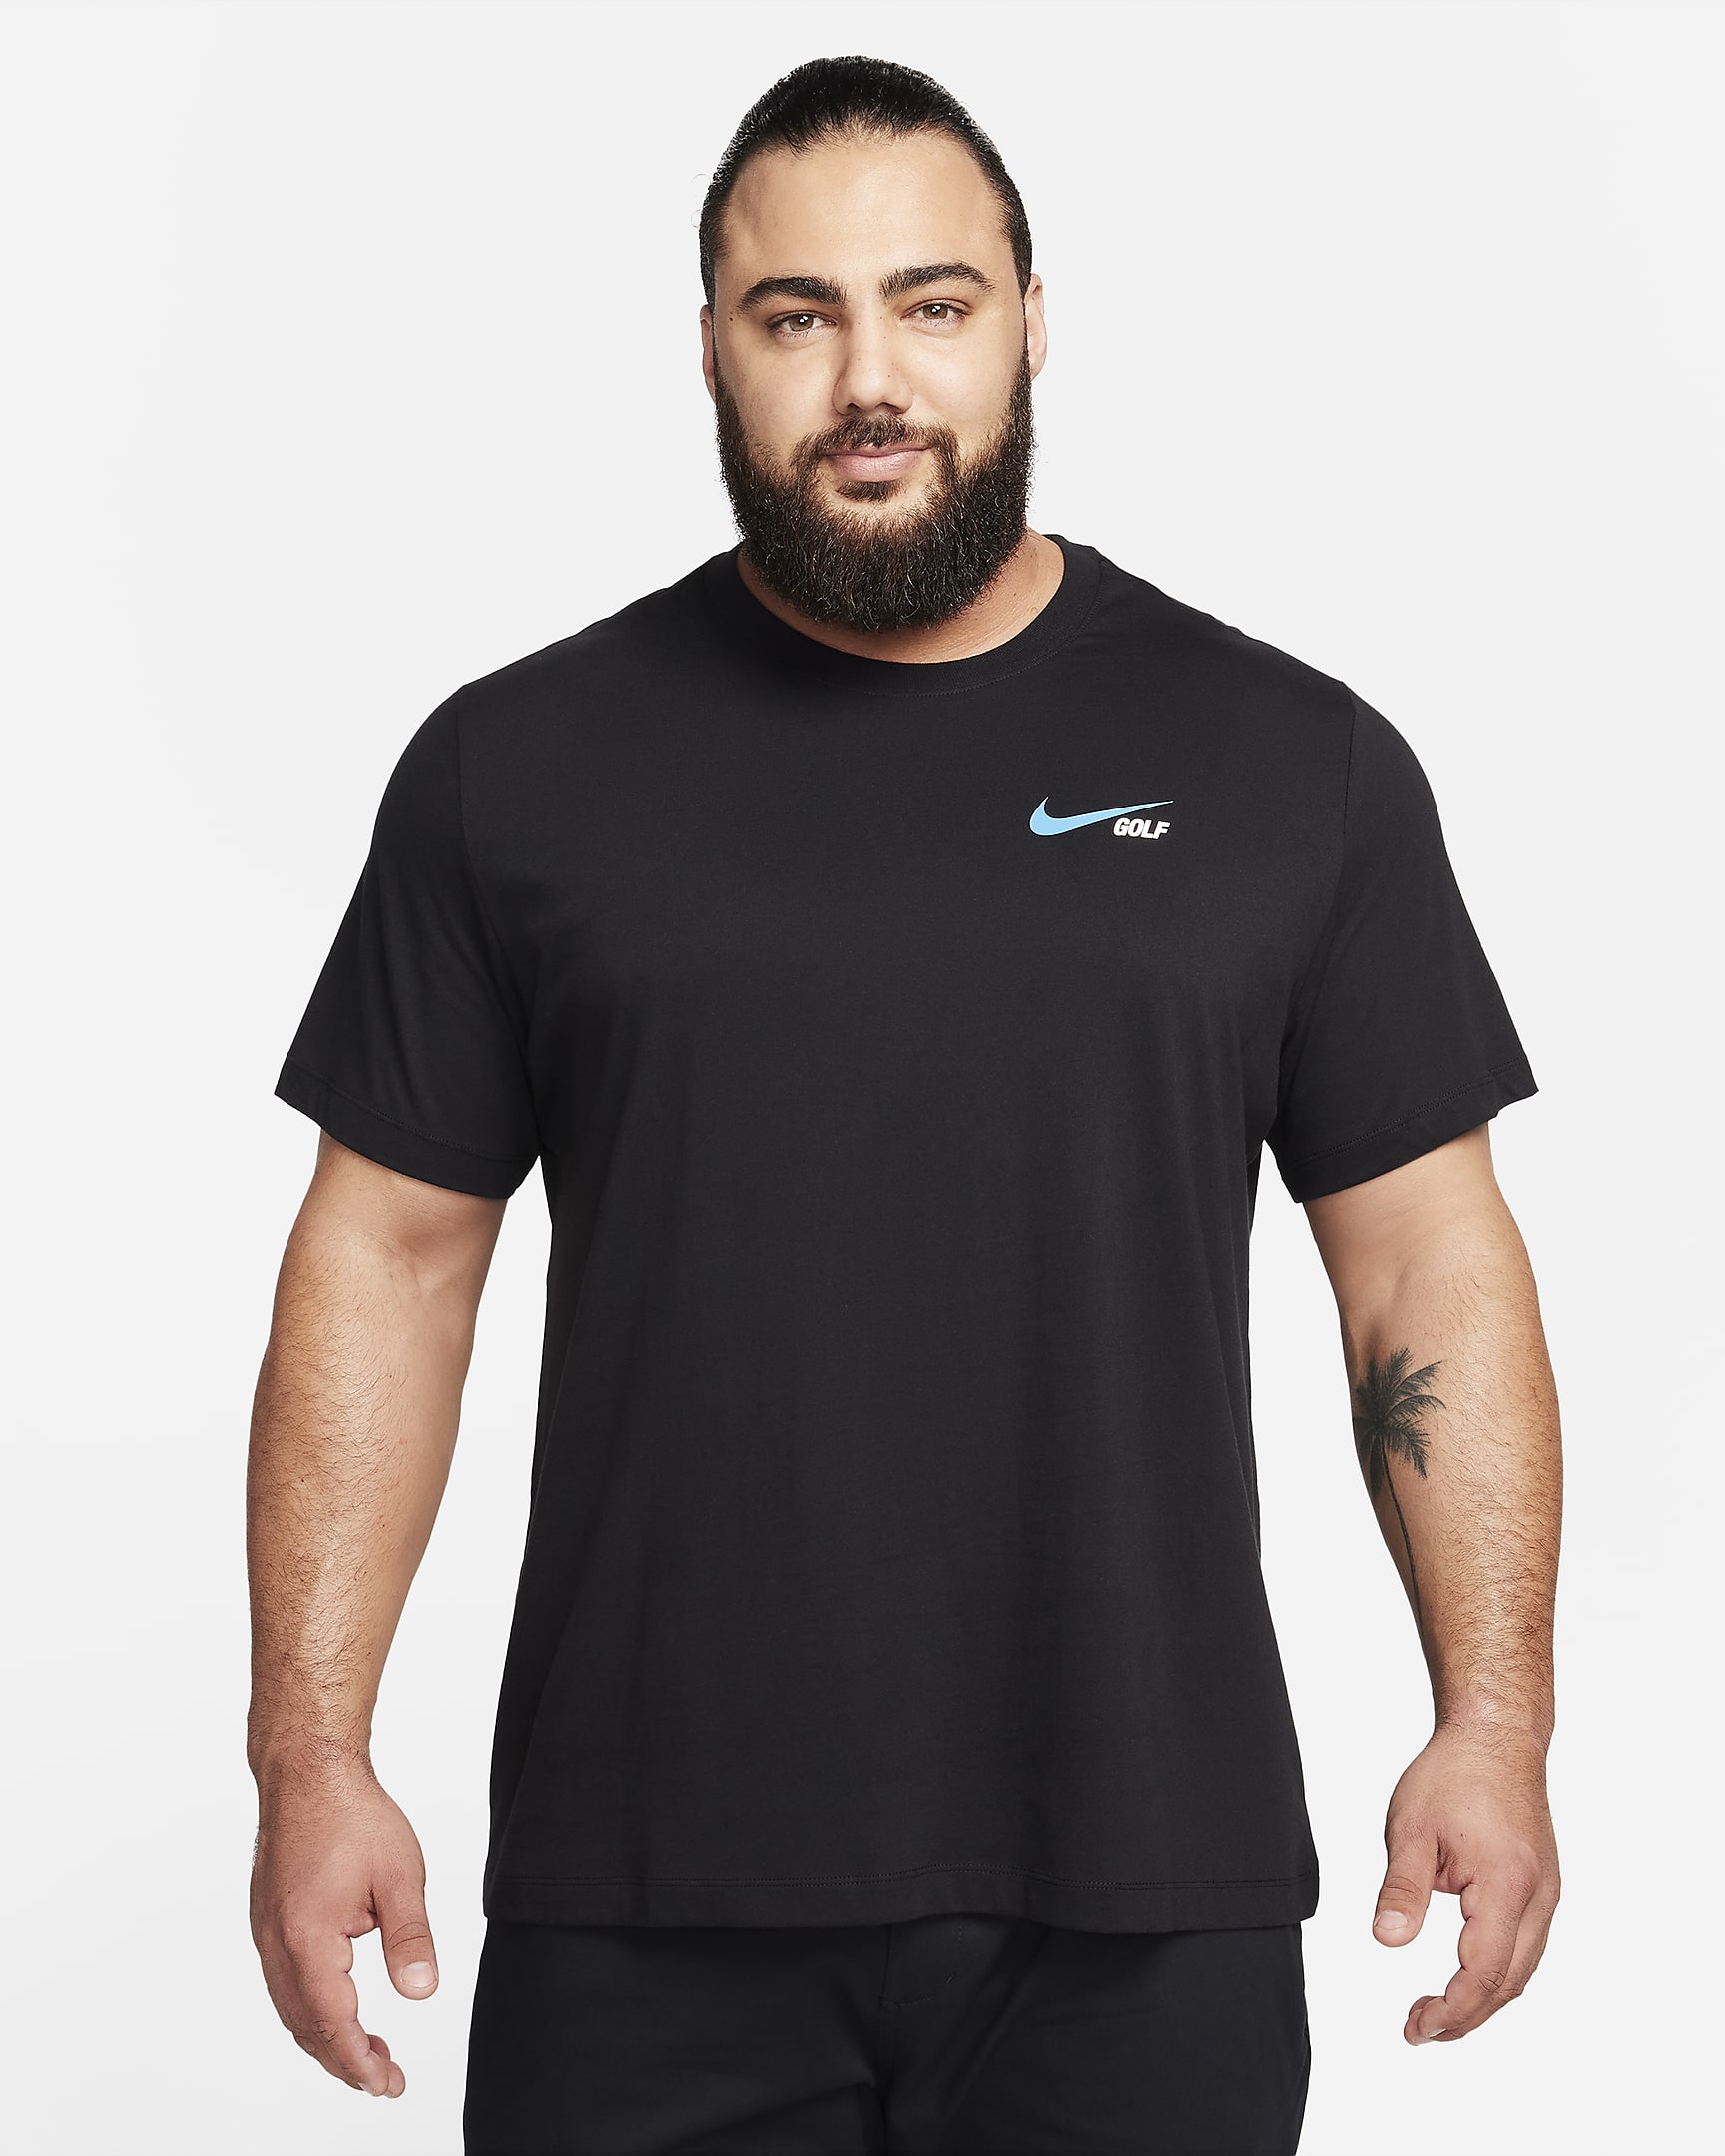 Nike Men's Golf T-Shirt. Nike AT